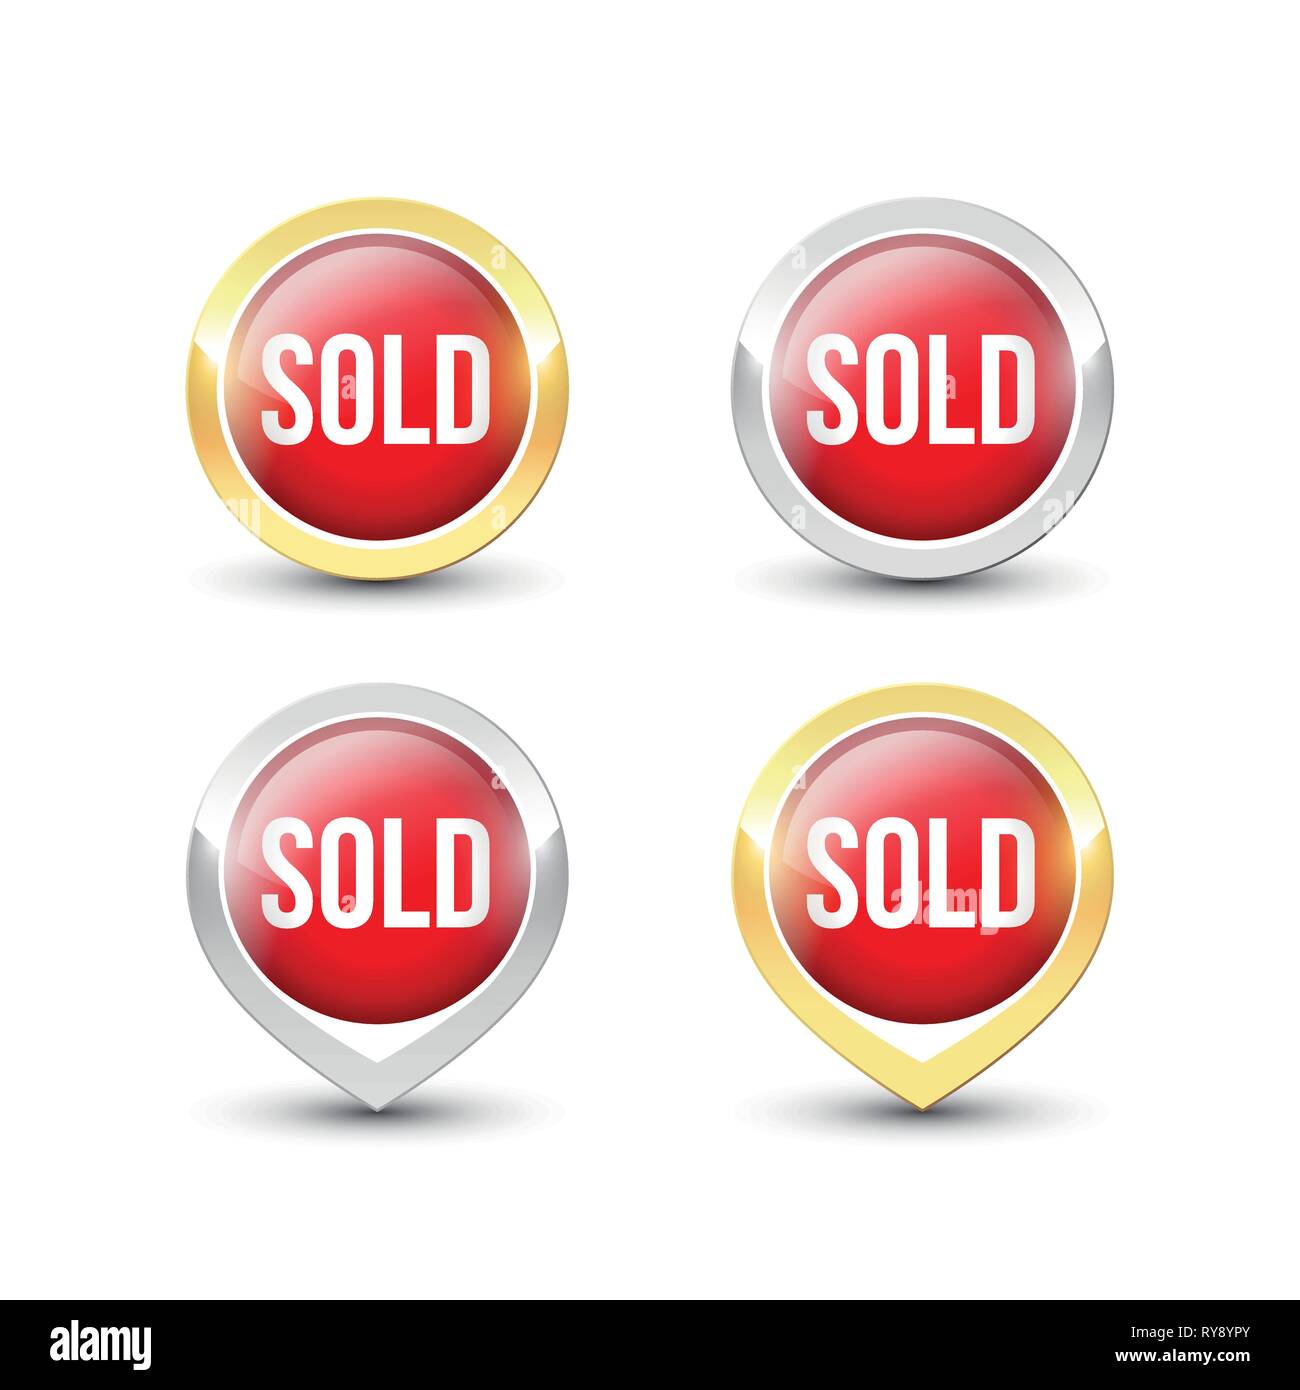 Redonda Roja vende botones y punteros con borde de oro y plata metálicos. Iconos de etiqueta vectorial aislado sobre fondo blanco. Ilustración del Vector